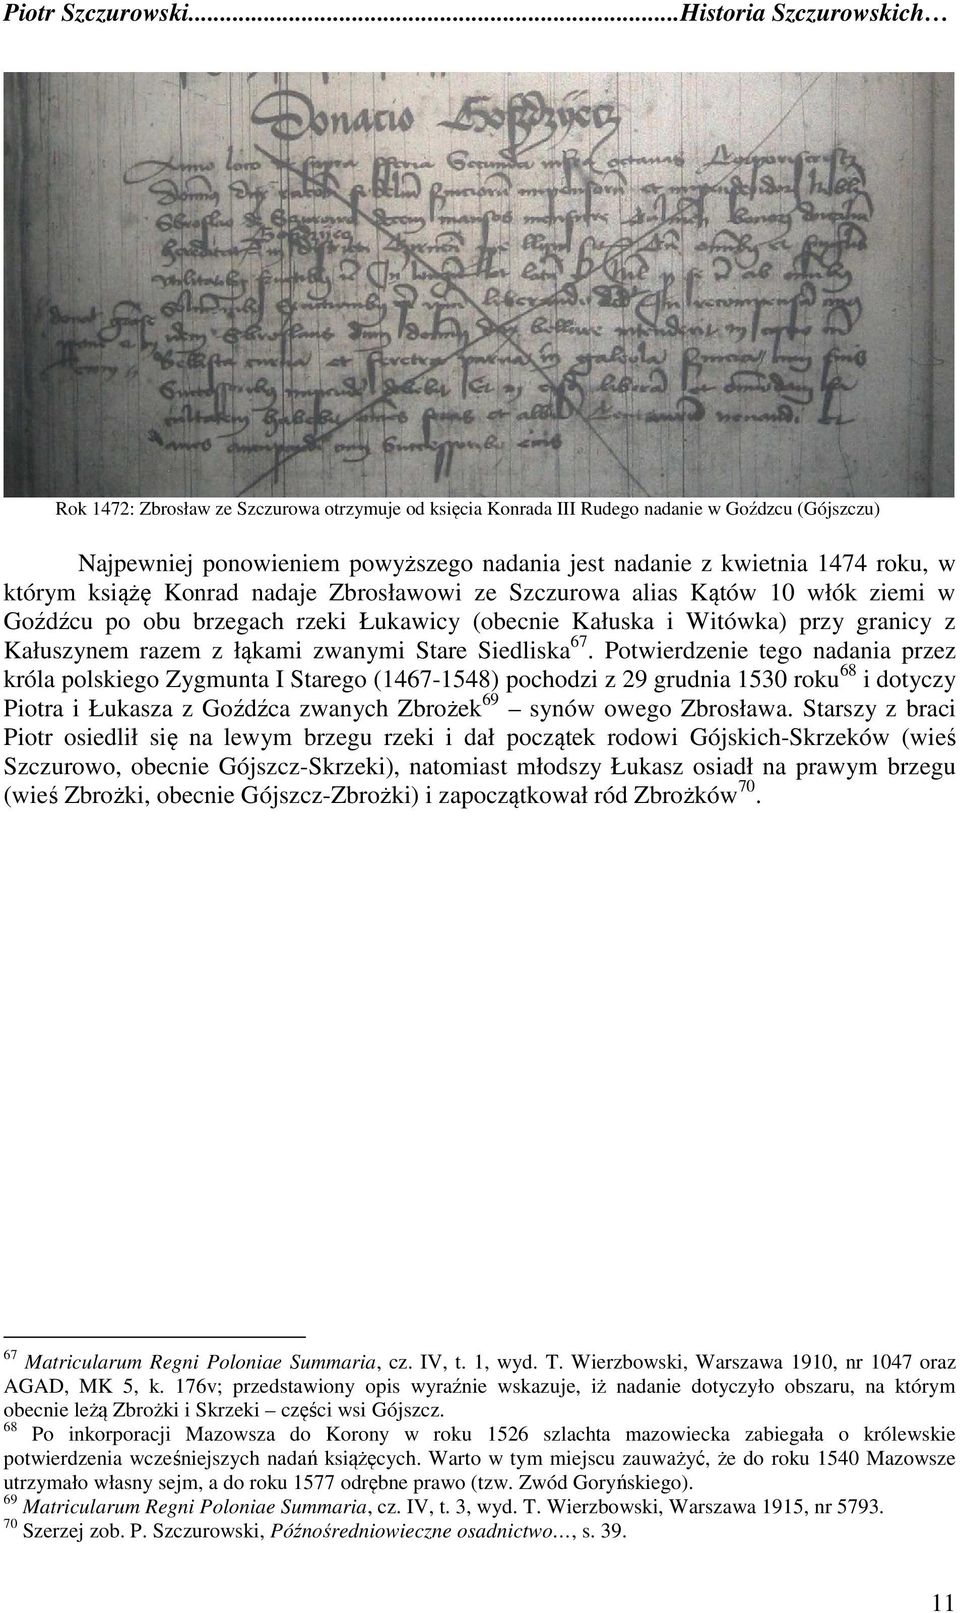 67. Potwierdzenie tego nadania przez króla polskiego Zygmunta I Starego (1467-1548) pochodzi z 29 grudnia 1530 roku 68 i dotyczy Piotra i Łukasza z Goźdźca zwanych Zbrożek 69 synów owego Zbrosława.